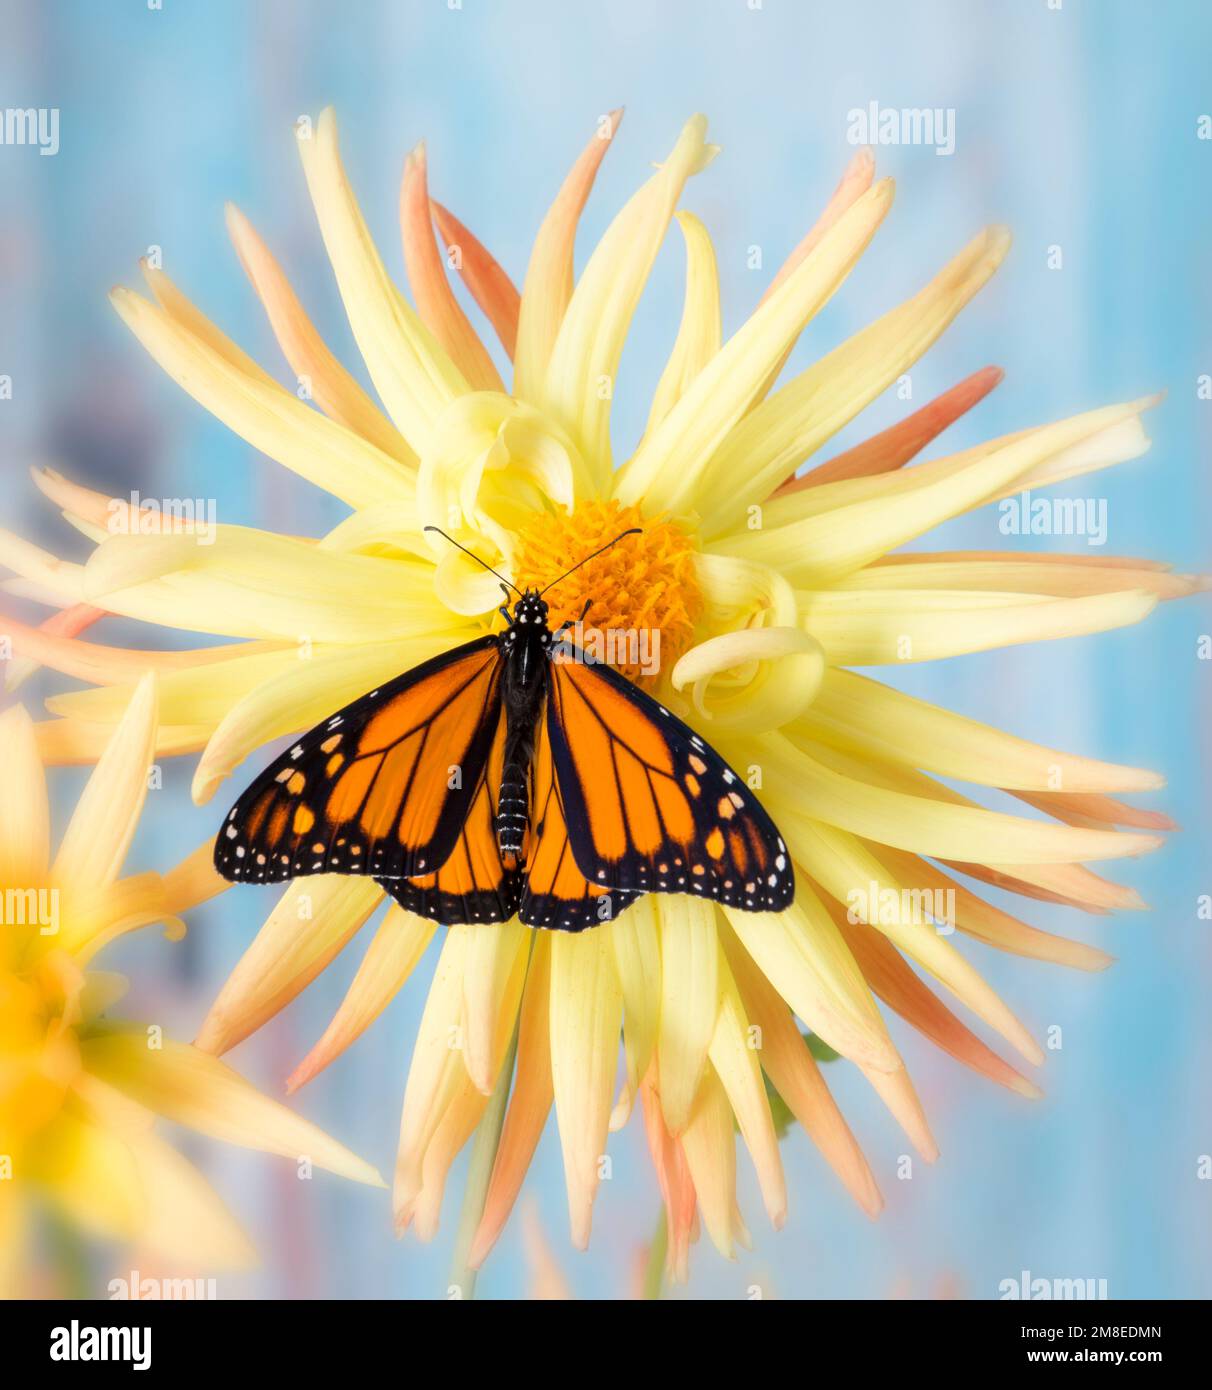 Un papillon monarque (danaus plexippus) sur une étoile dahlia (pinnata) fleur avec ailes étalées Banque D'Images